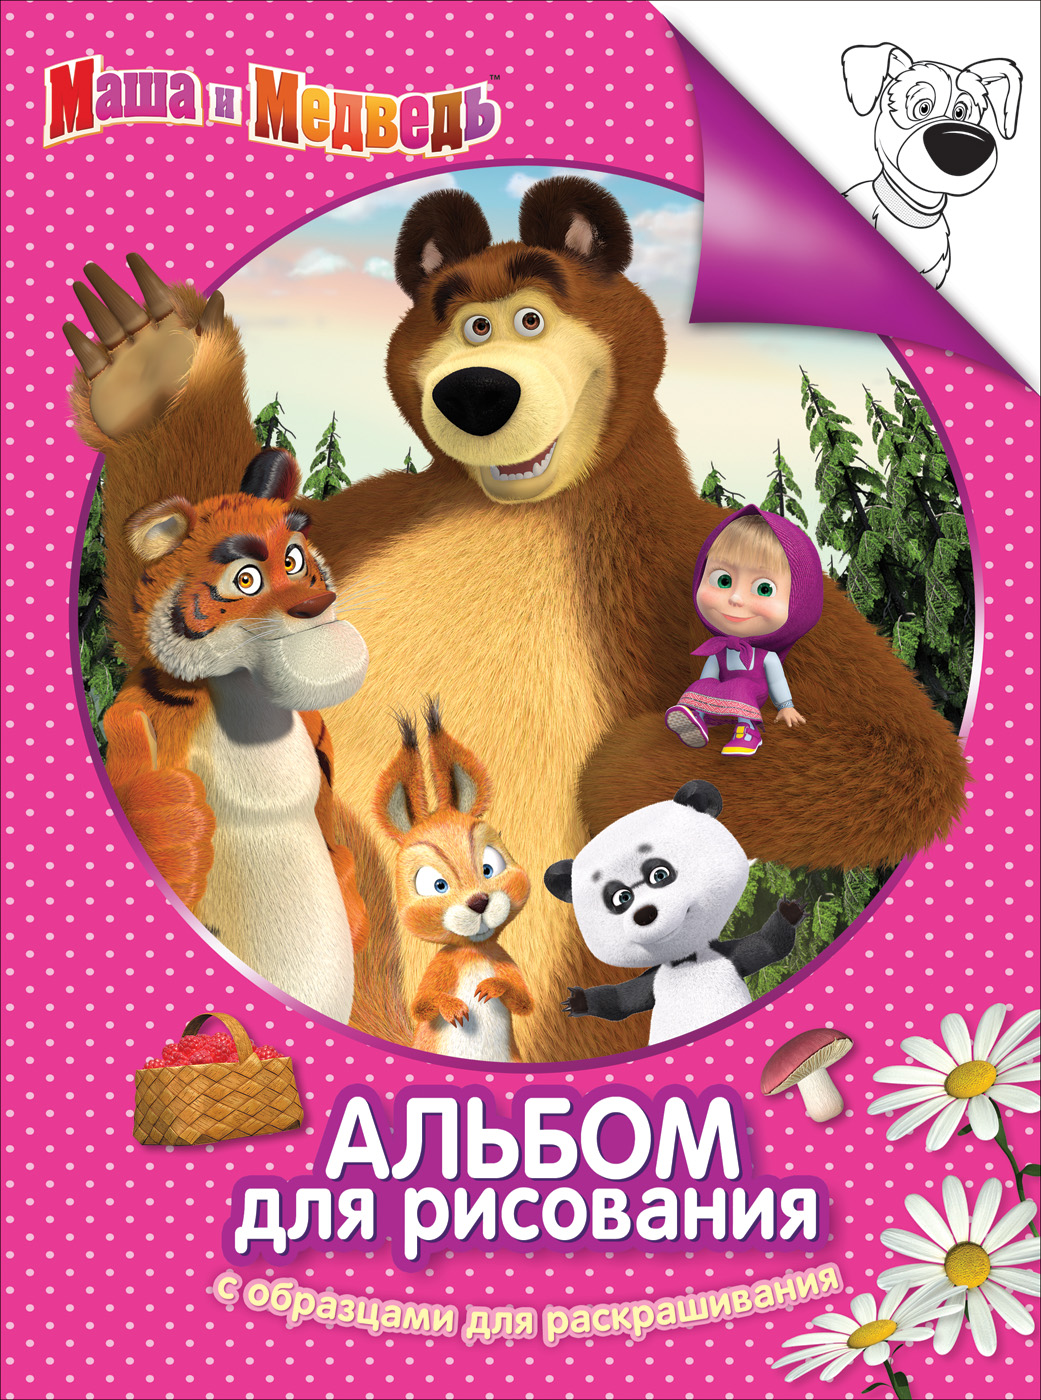 Альбом-раскраска 30915 Маша и Медведь розов Росмэн - Волгоград 